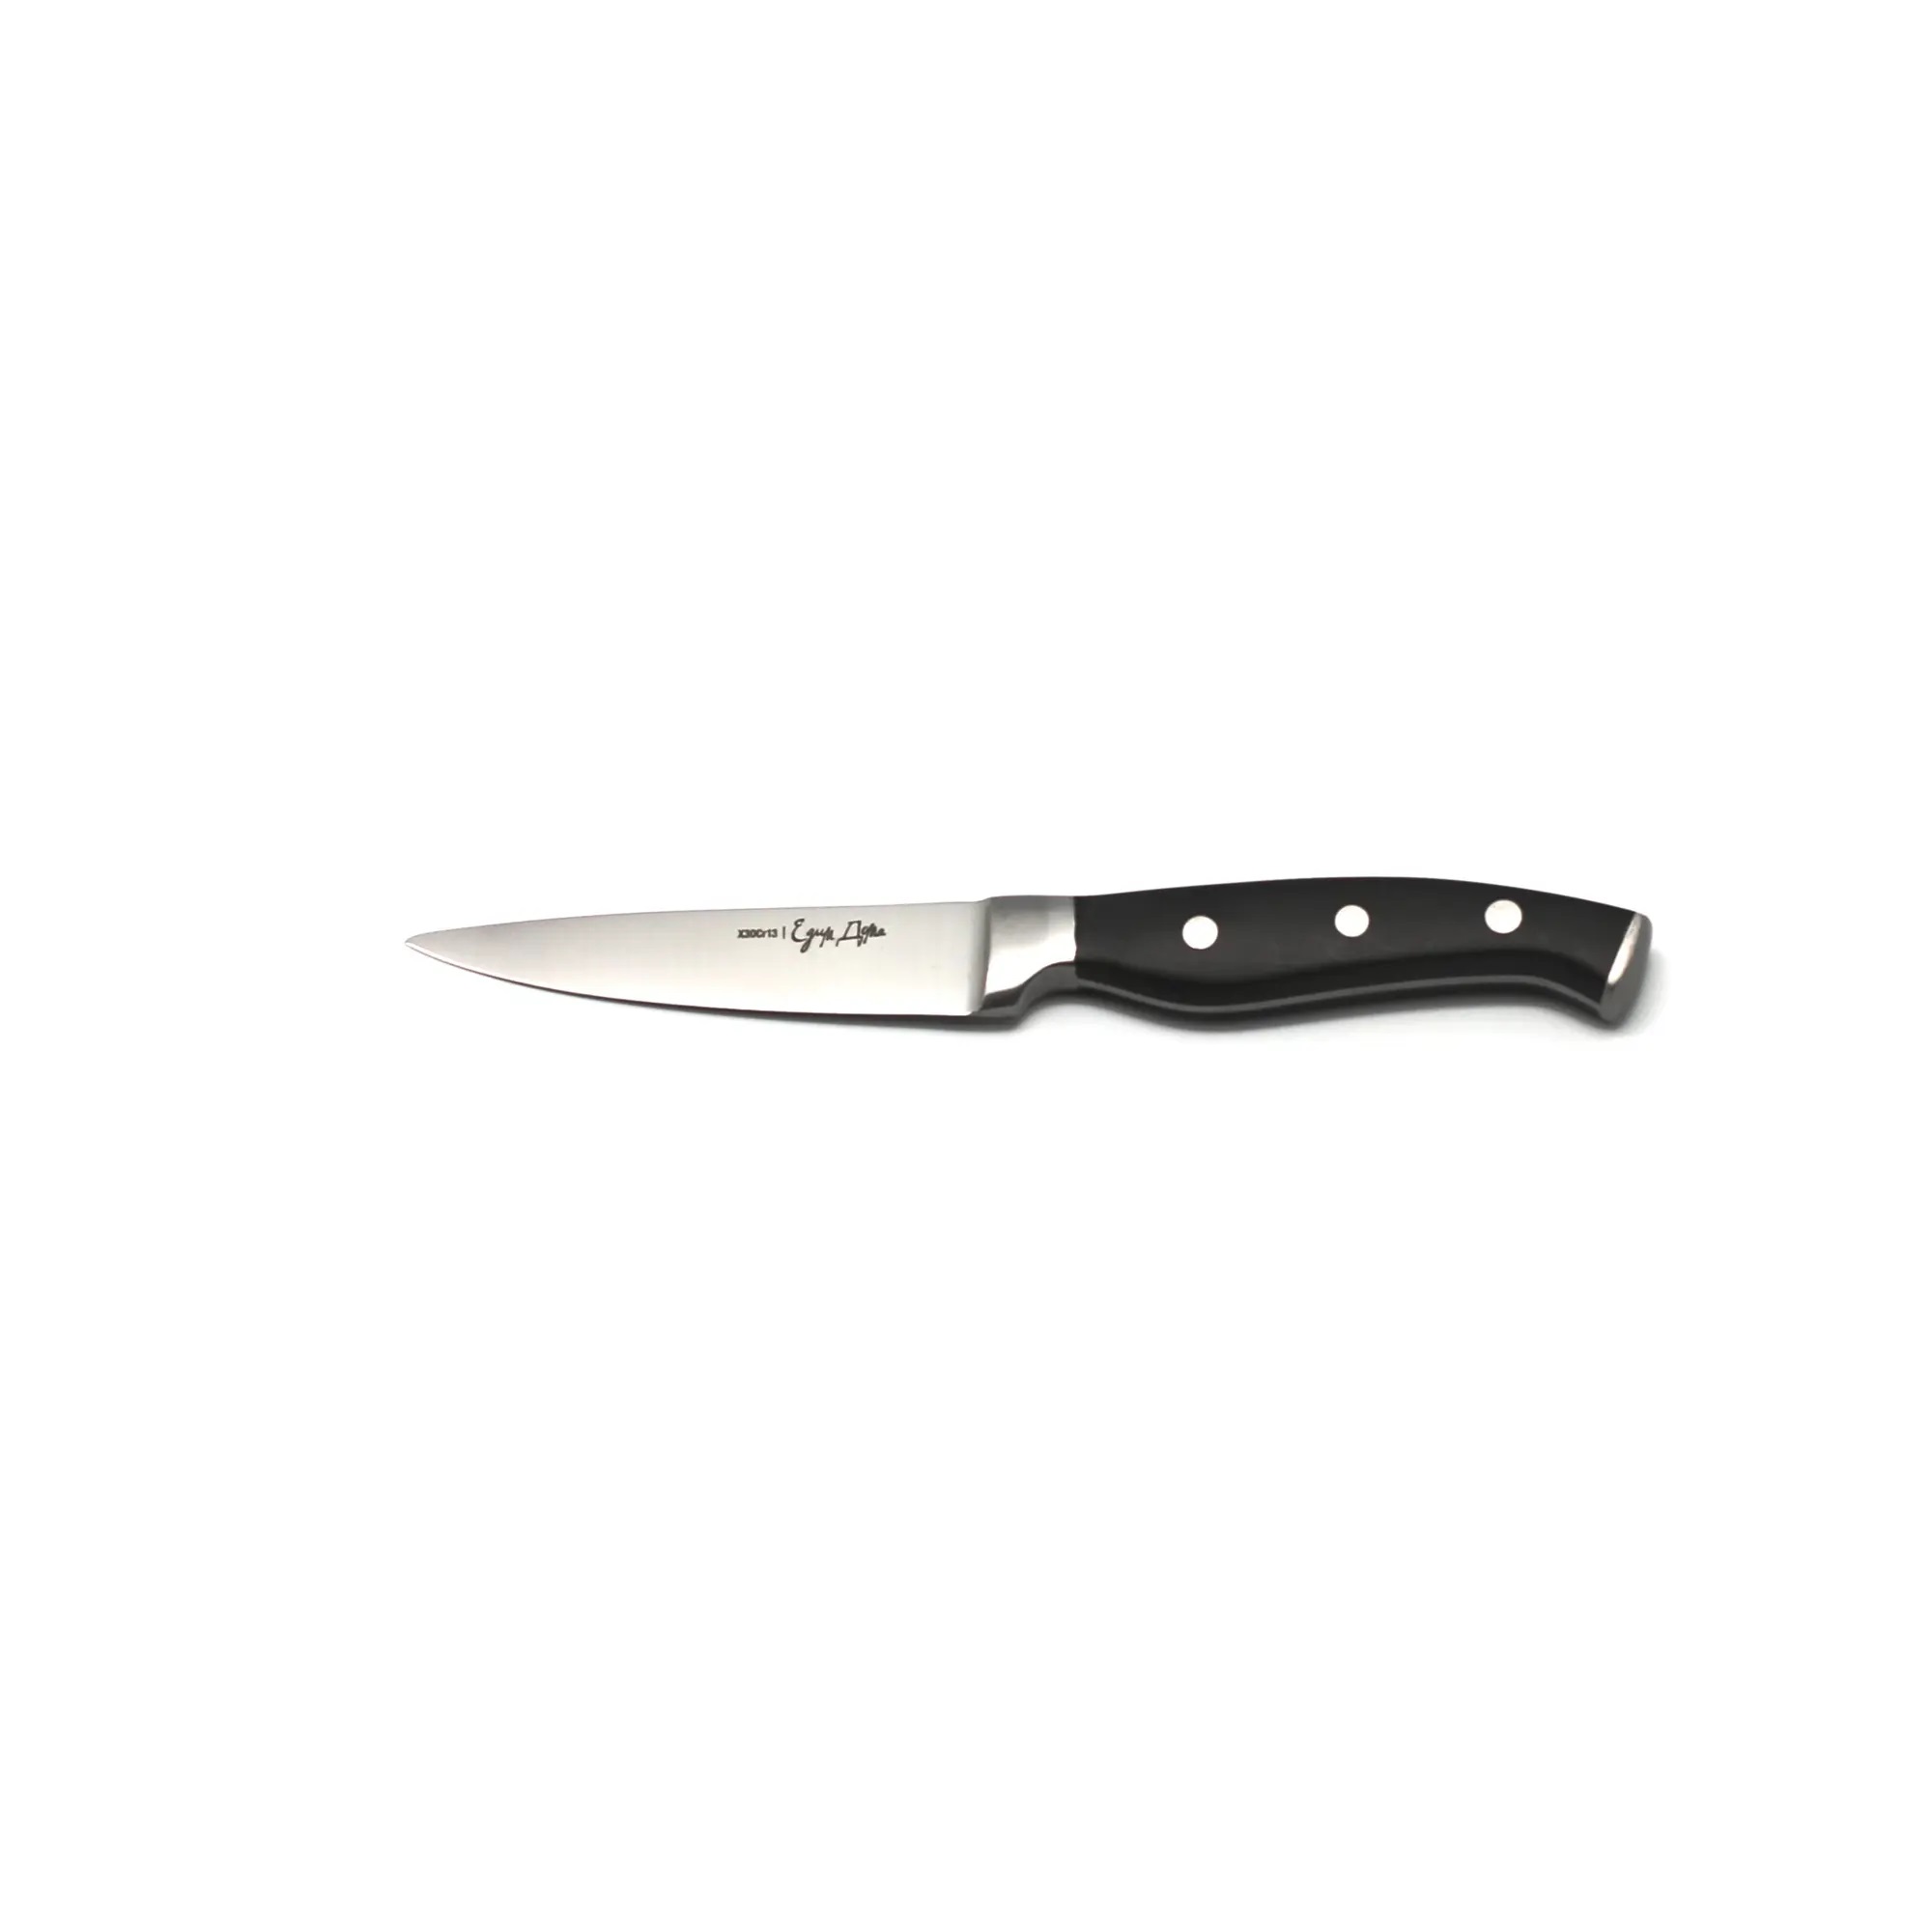 нож для нарезки едим дома 20см листовой ed 404 Нож овощной Едим дома 9см кованый (ED-109)